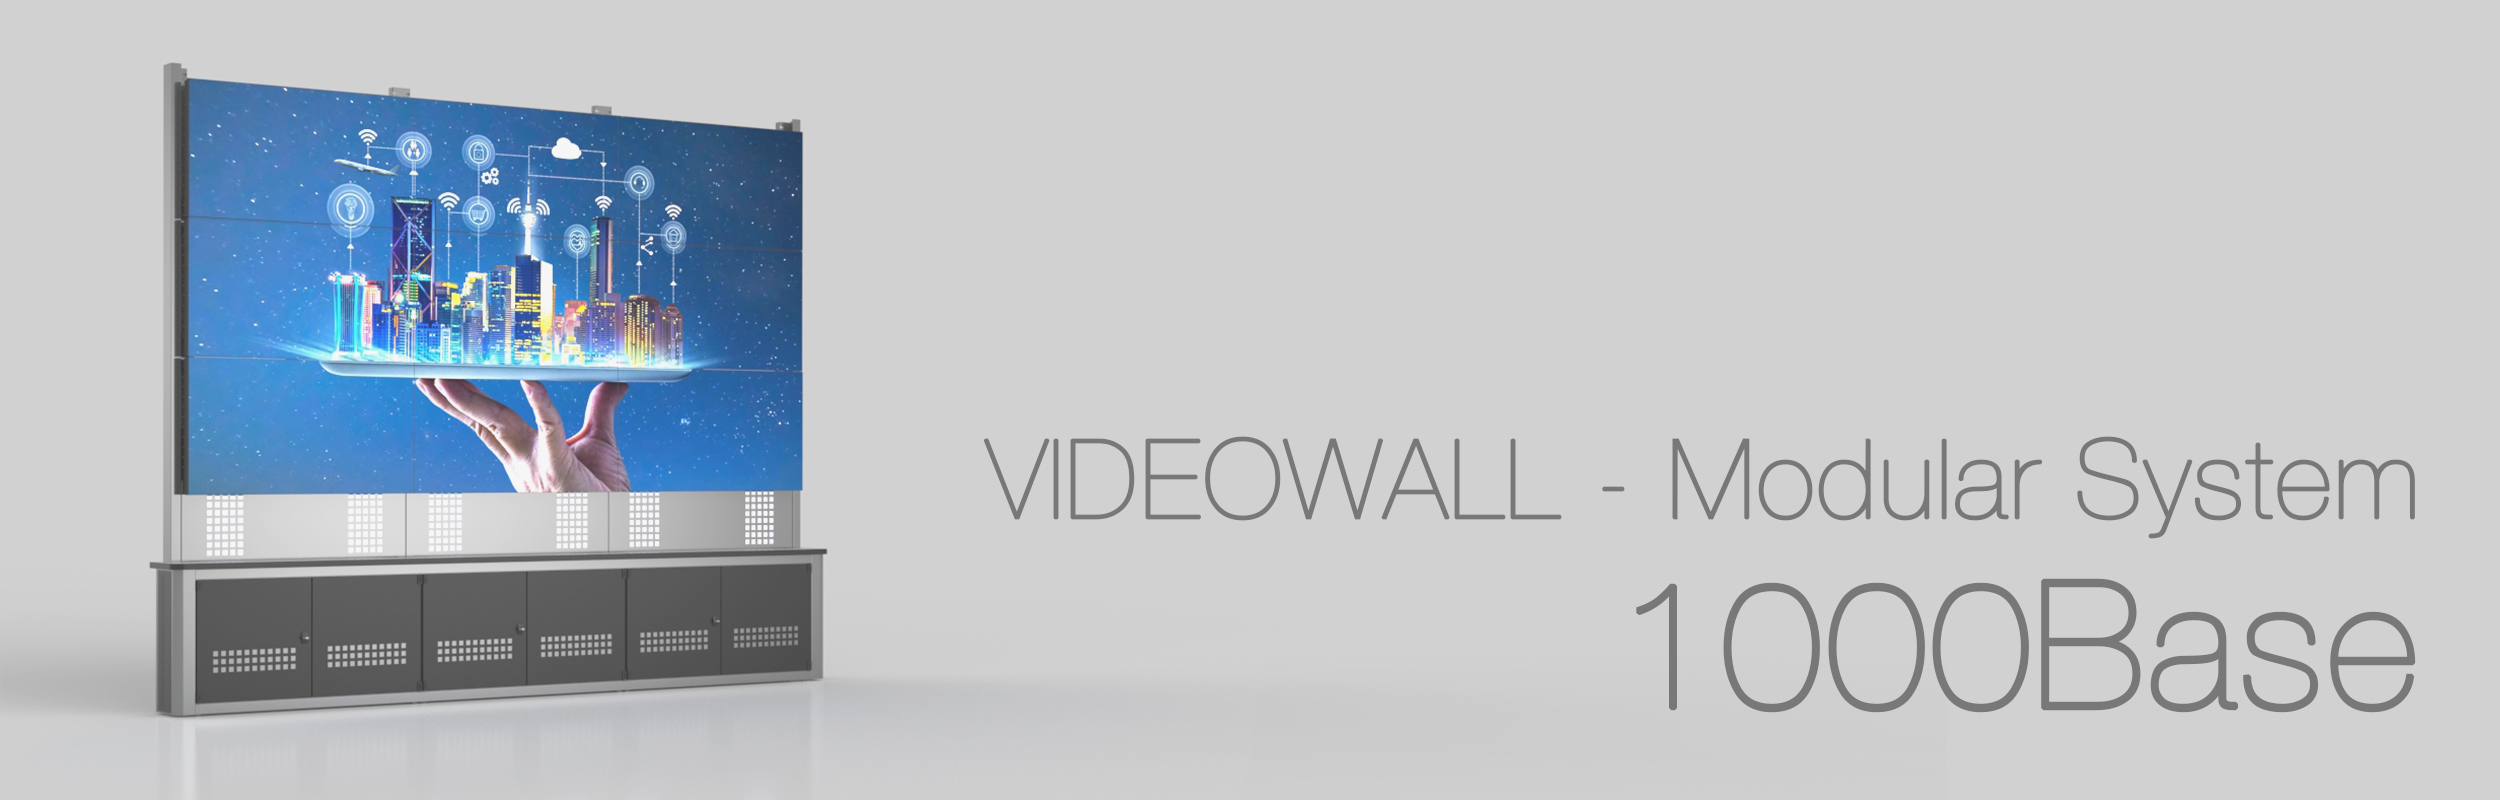 Videowall 1000Base